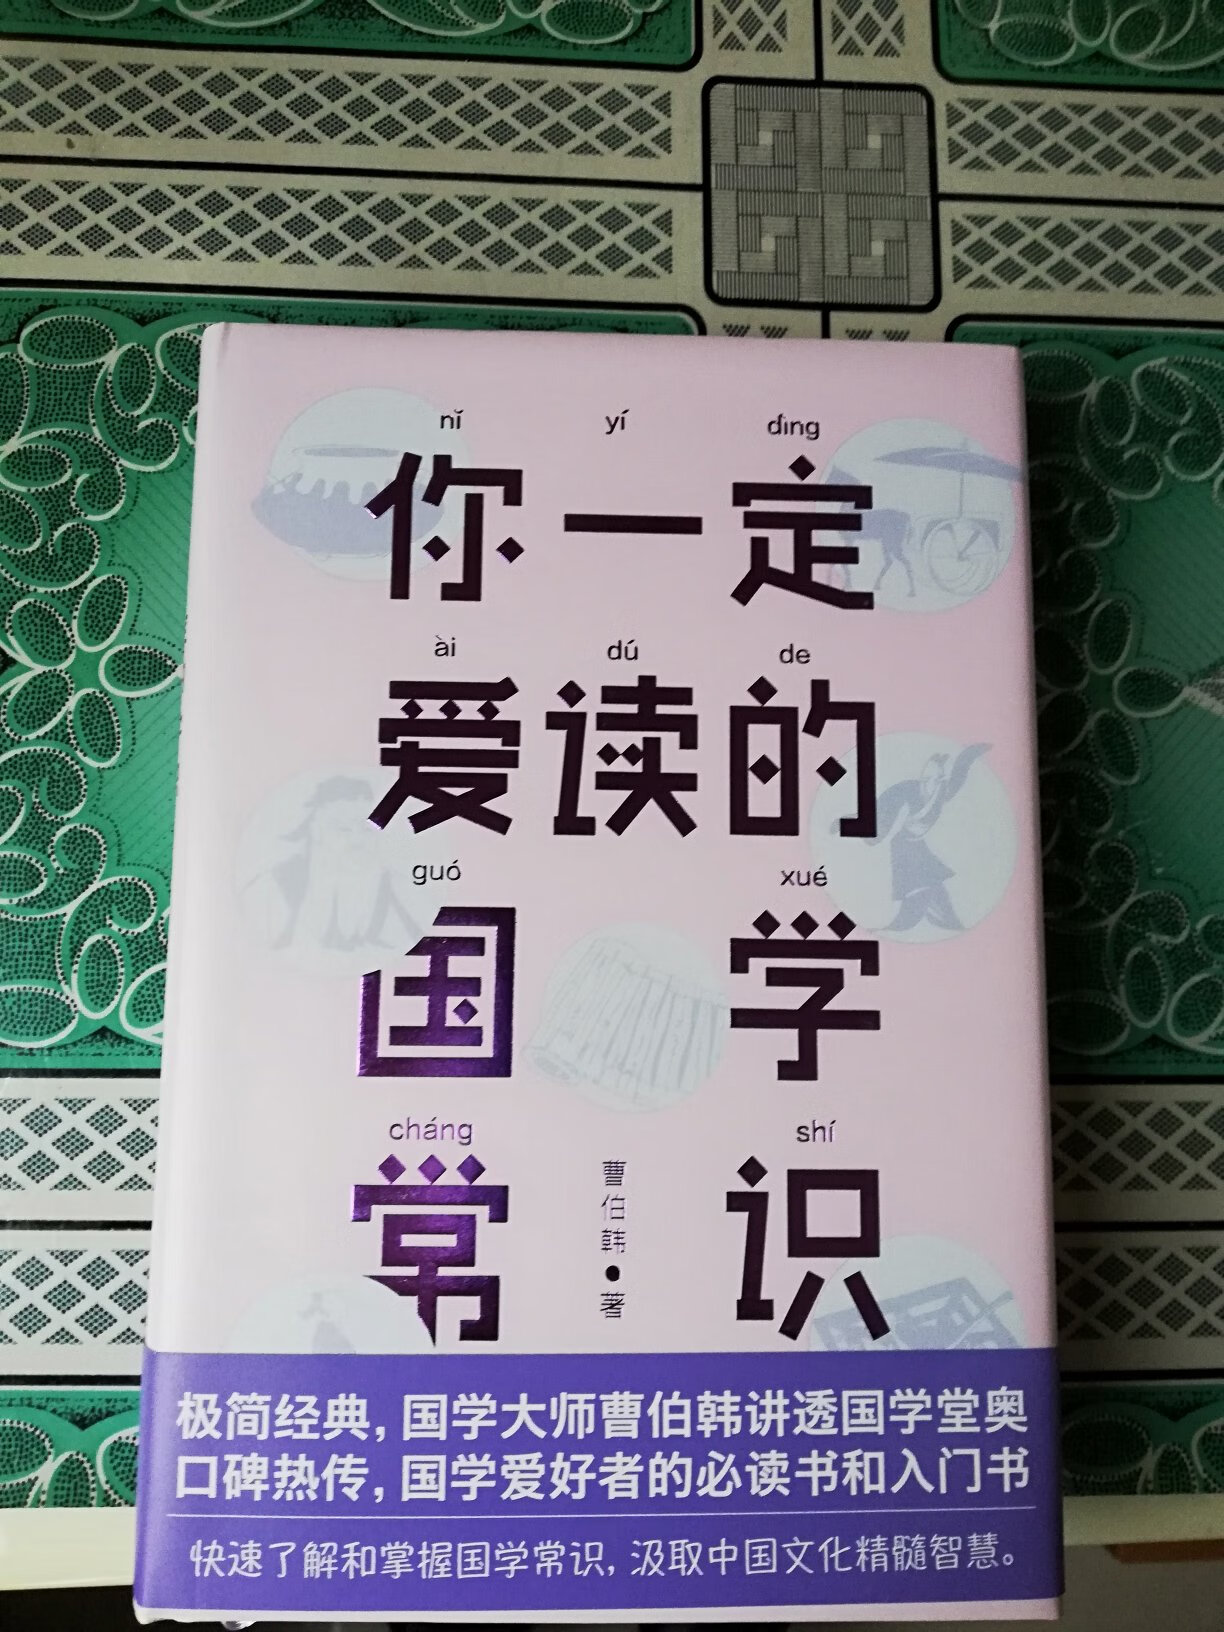 翻阅本书感觉深入浅出、通俗易懂，能快速了解国学常识和中国文化精髓智慧。